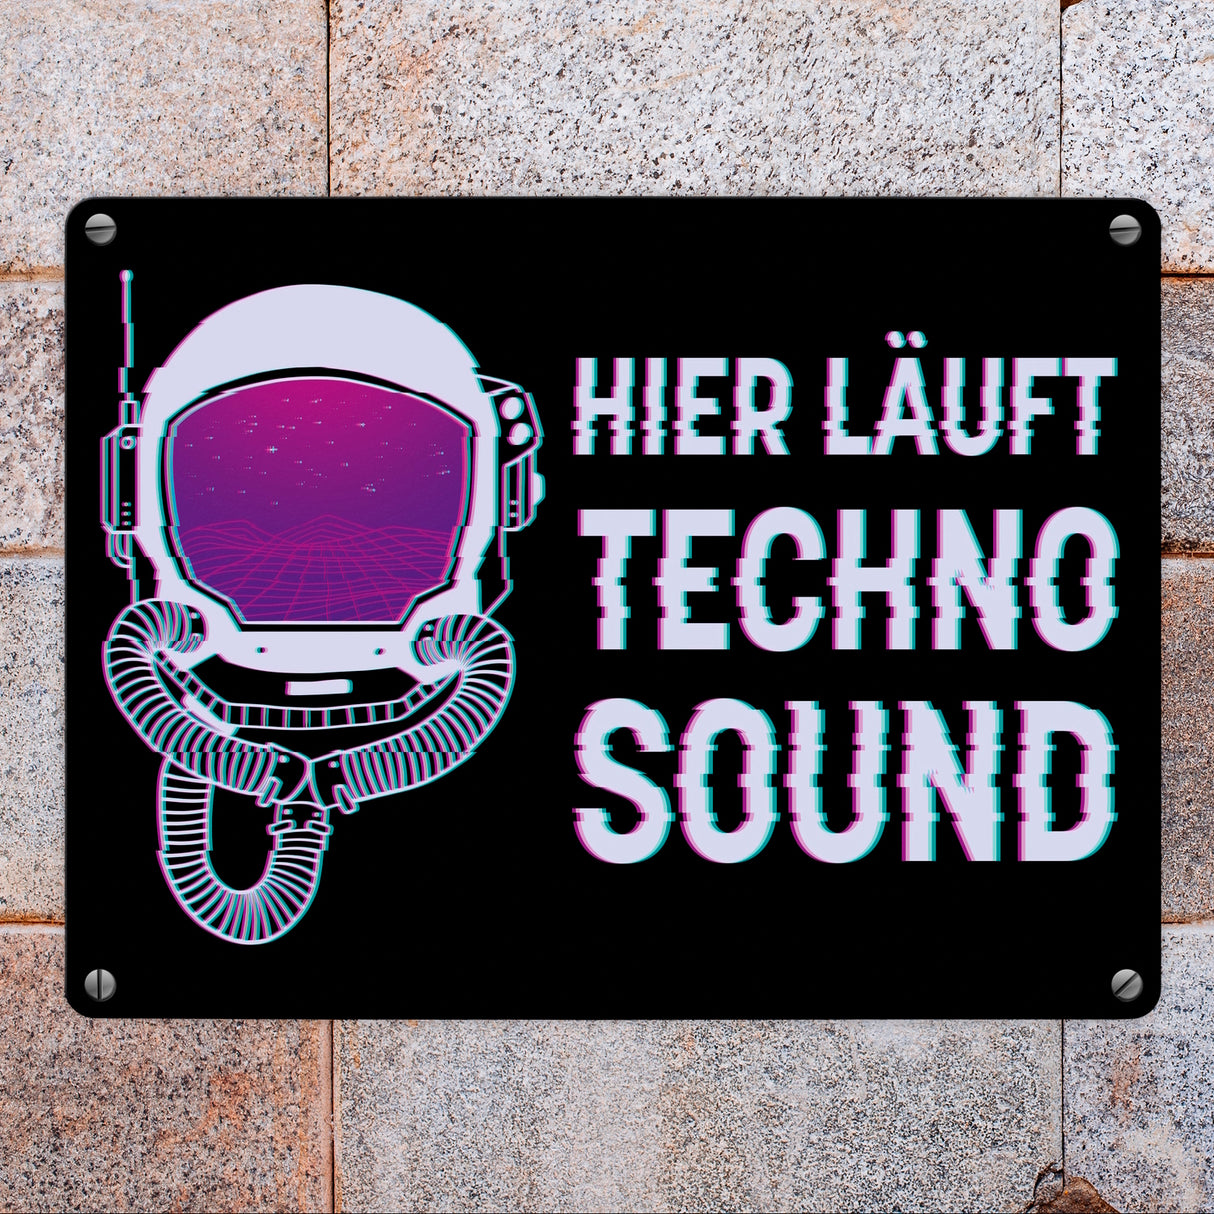 Hier läuft Techno Sound Metallschild mit Astronautenhelm für Raver